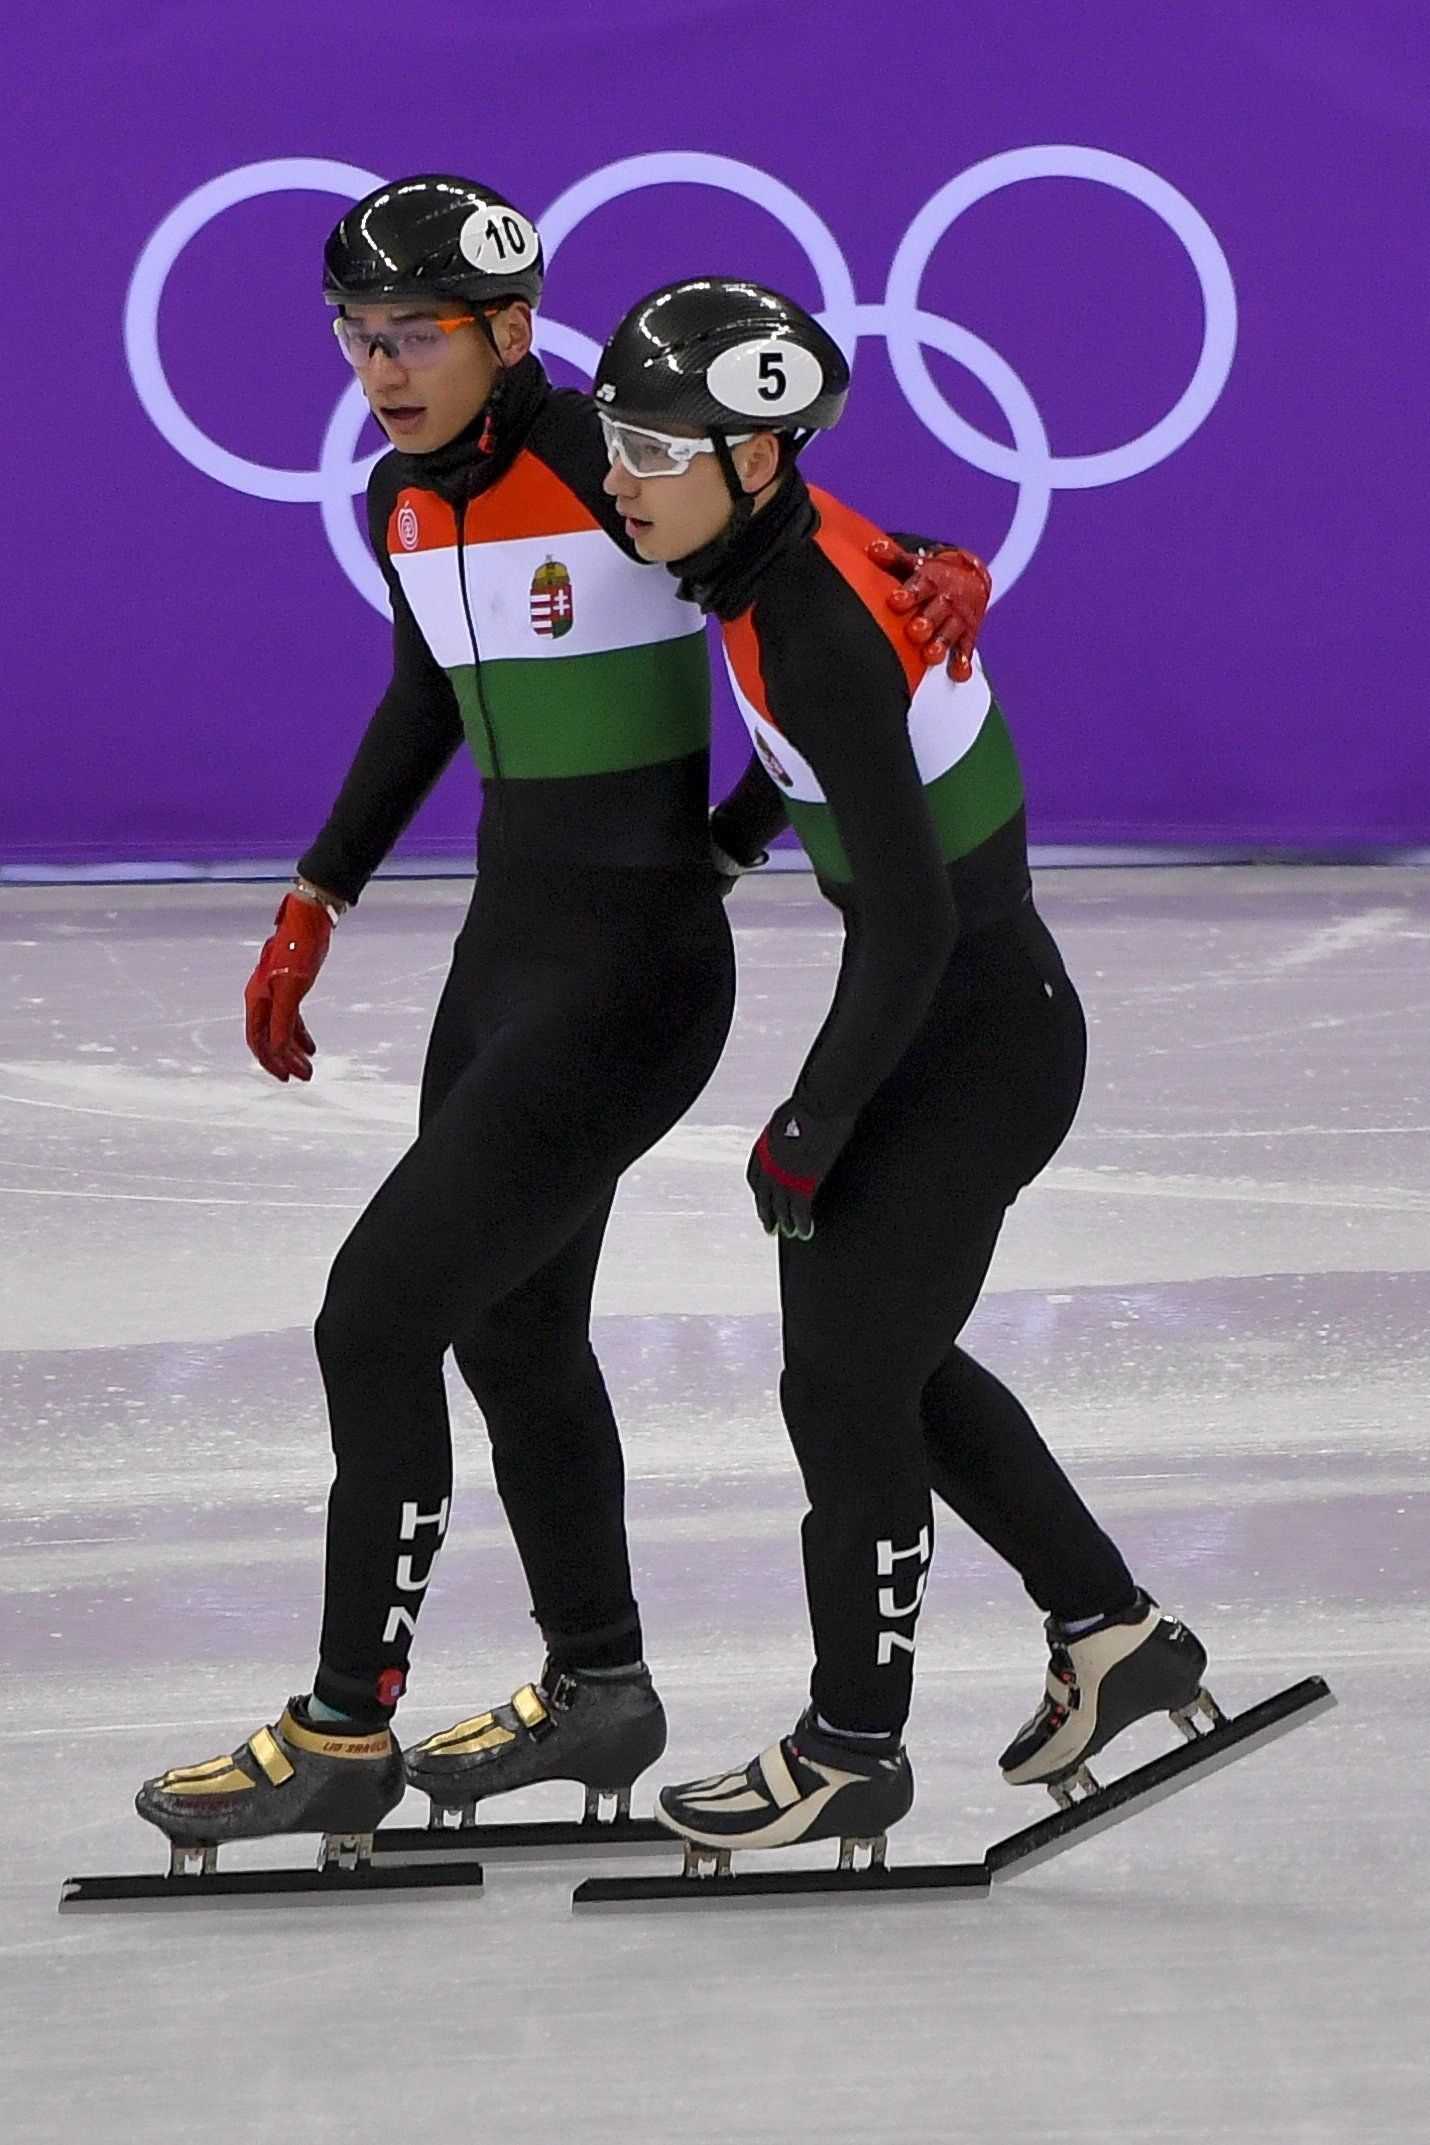 Megőrülnek a rettentően jóképű Liu-testvérekért a téli olimpián – sikítva ünneplik őket a koreai tinilányok, a srácok pedig utánozzák a jellegzetes Liu-szemöldökigazítást – videó